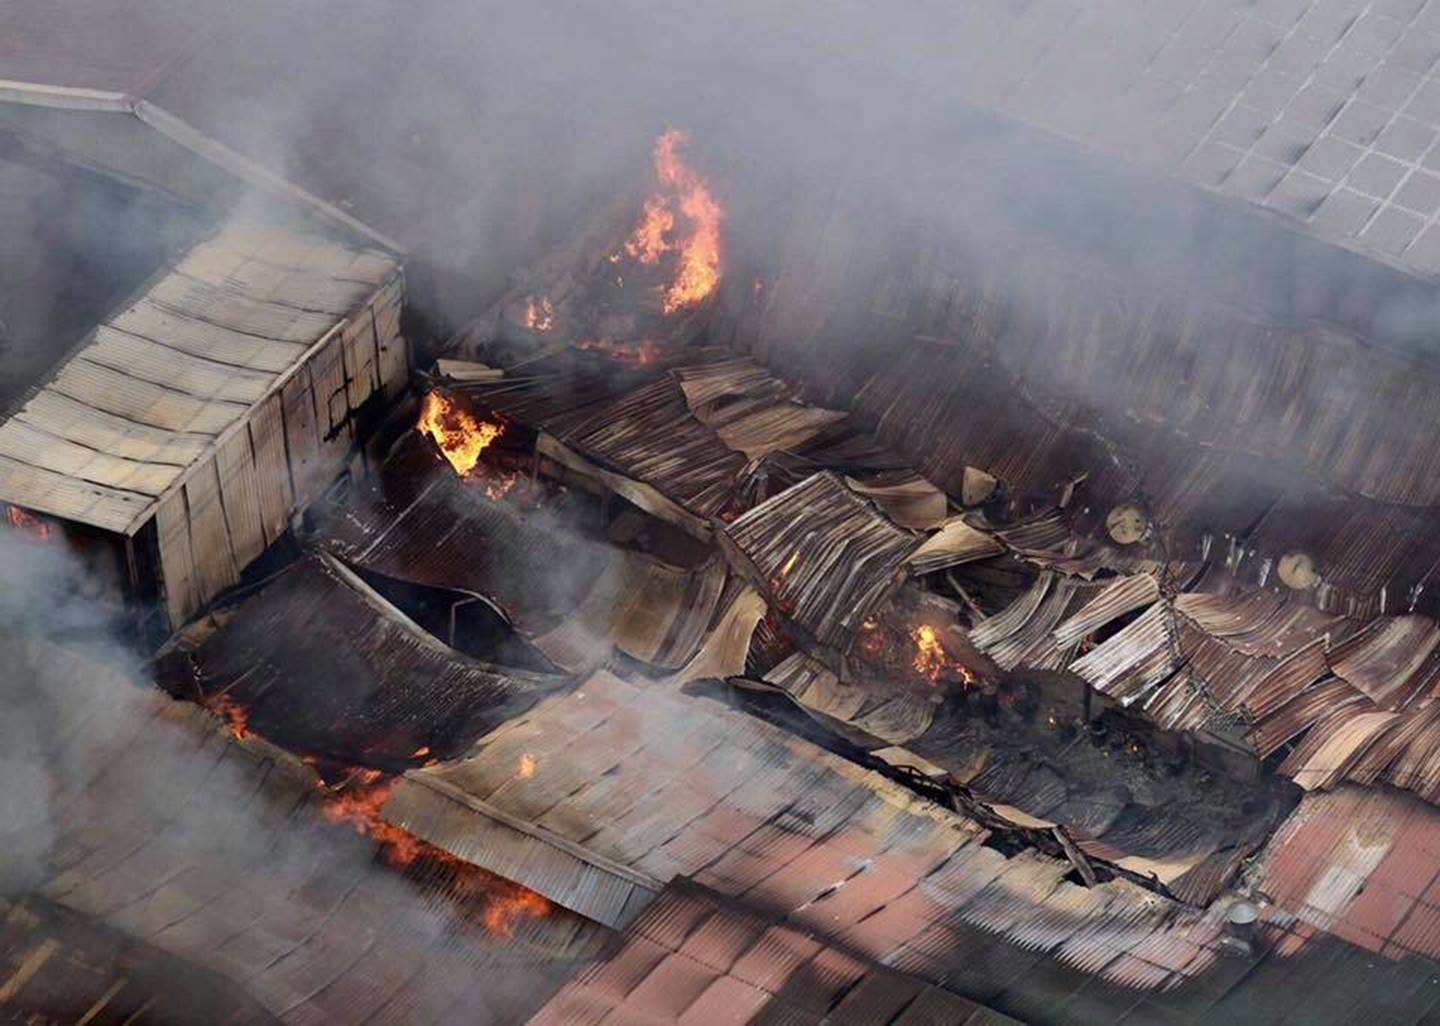 Hà Nội: Cháy khu nhà kho gần Bến xe Nước Ngầm, người dân cố gắng giải cứu chiếc xe hiệu Ford Ranger-2